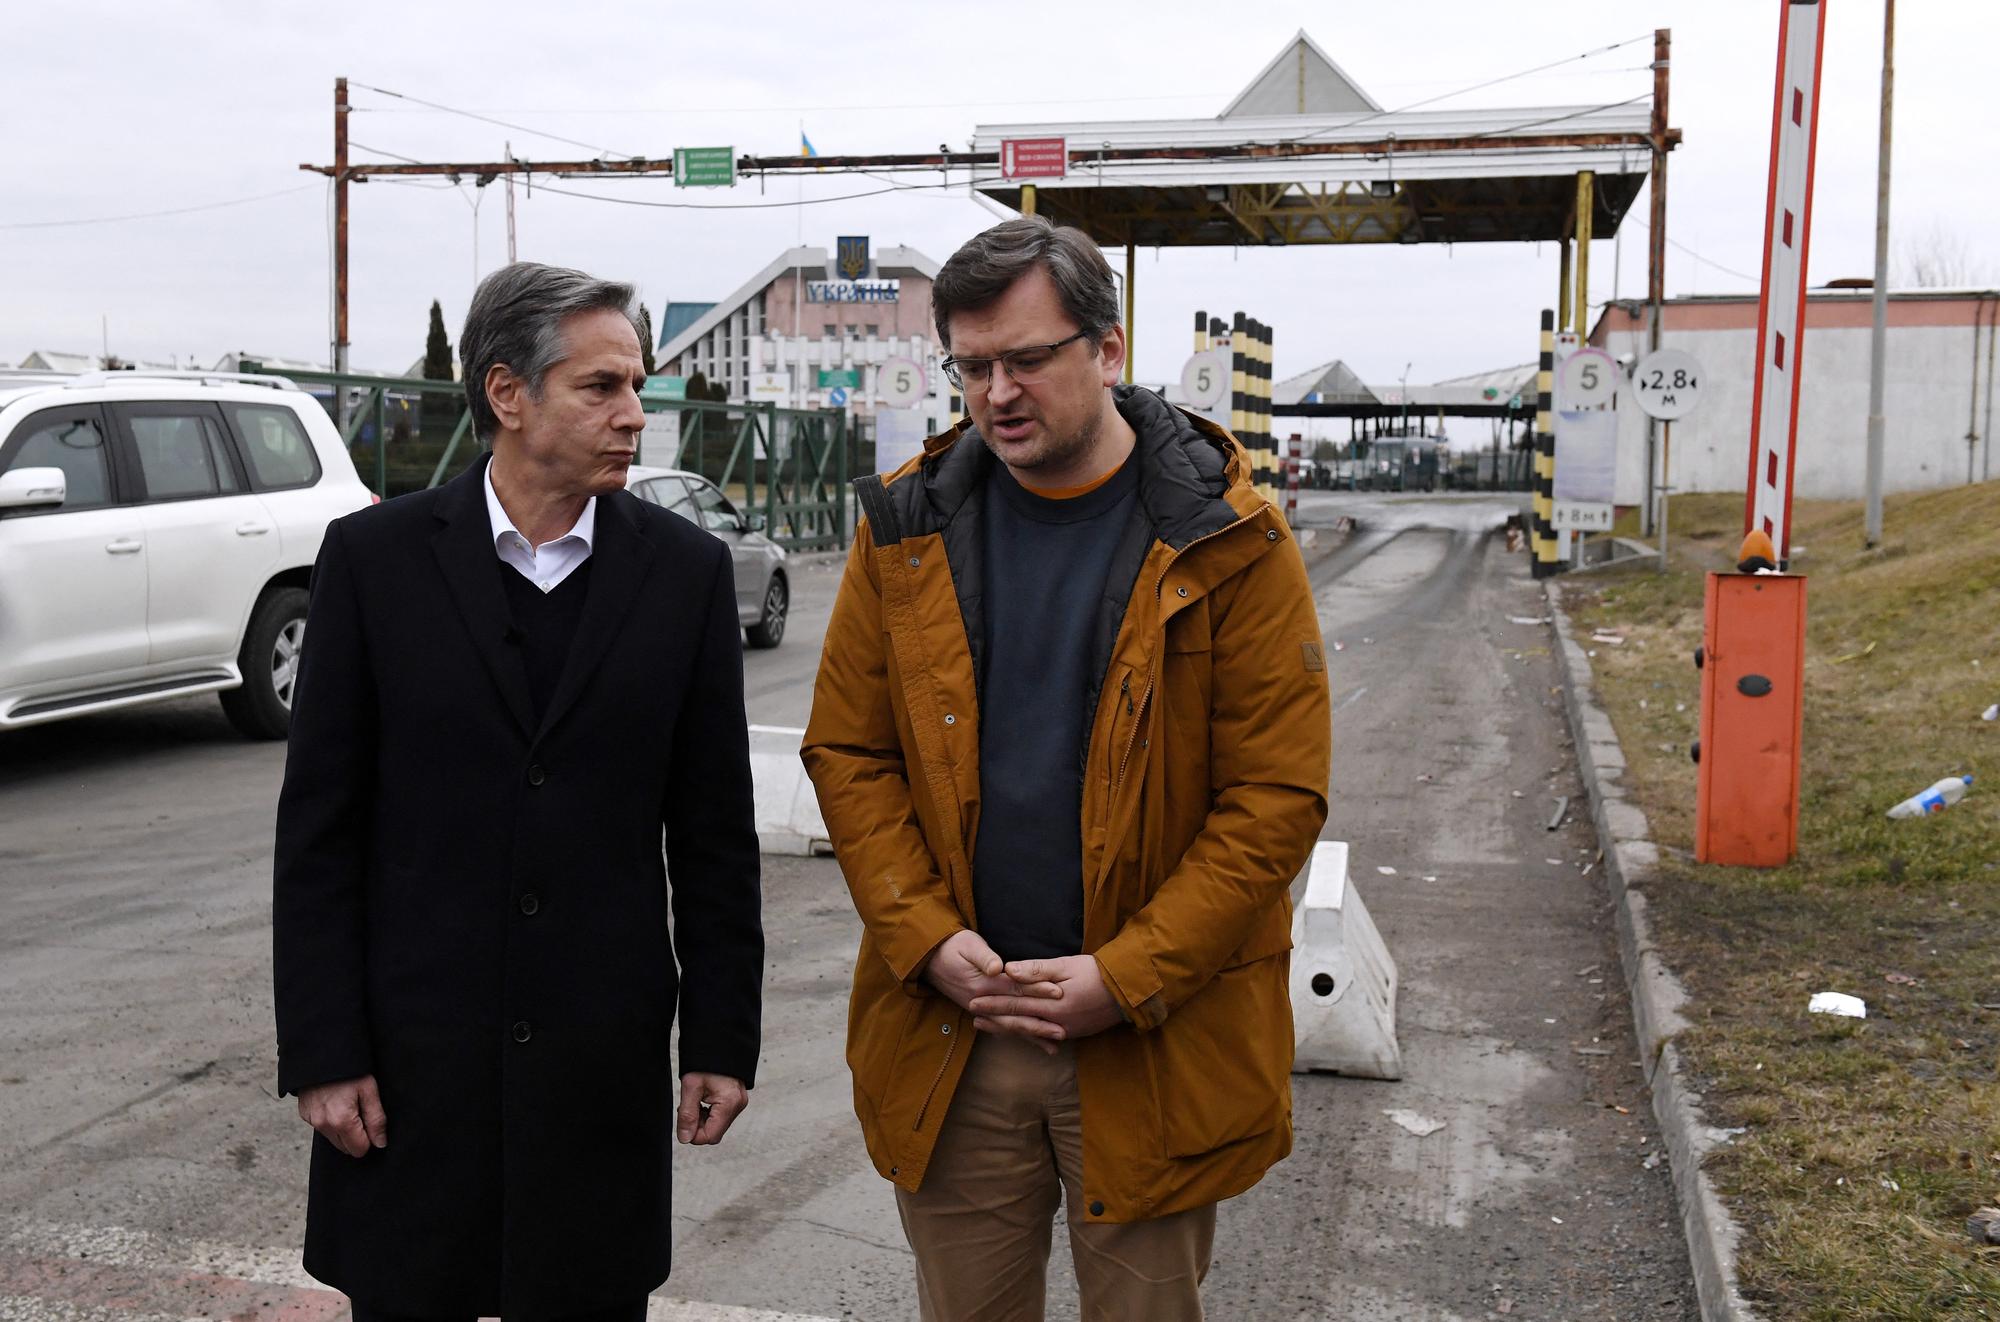 Le secrétaire d'État américain Antony Blinken et le ministre ukrainien des Affaires étrangères Dmytro Kuleba se sont rencontrés au poste frontière ukraino-polonais de Korczowa, en Pologne. [AFP - Olivier Douliery / Pool]